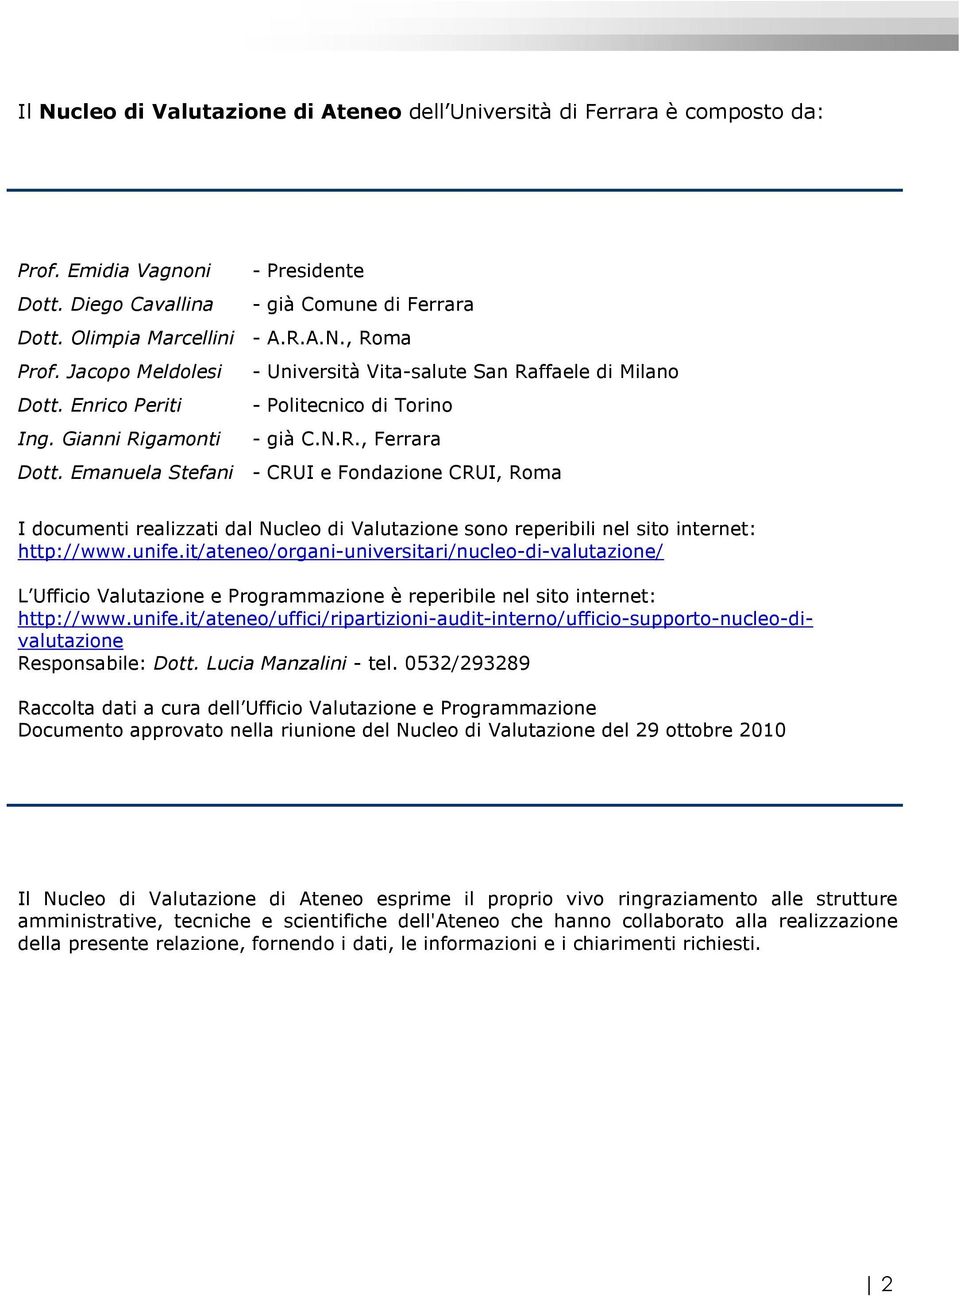 Emanuela Stefani - CRUI e Fondazione CRUI, Roma I documenti realizzati dal Nucleo di Valutazione sono reperibili nel sito internet: http://www.unife.